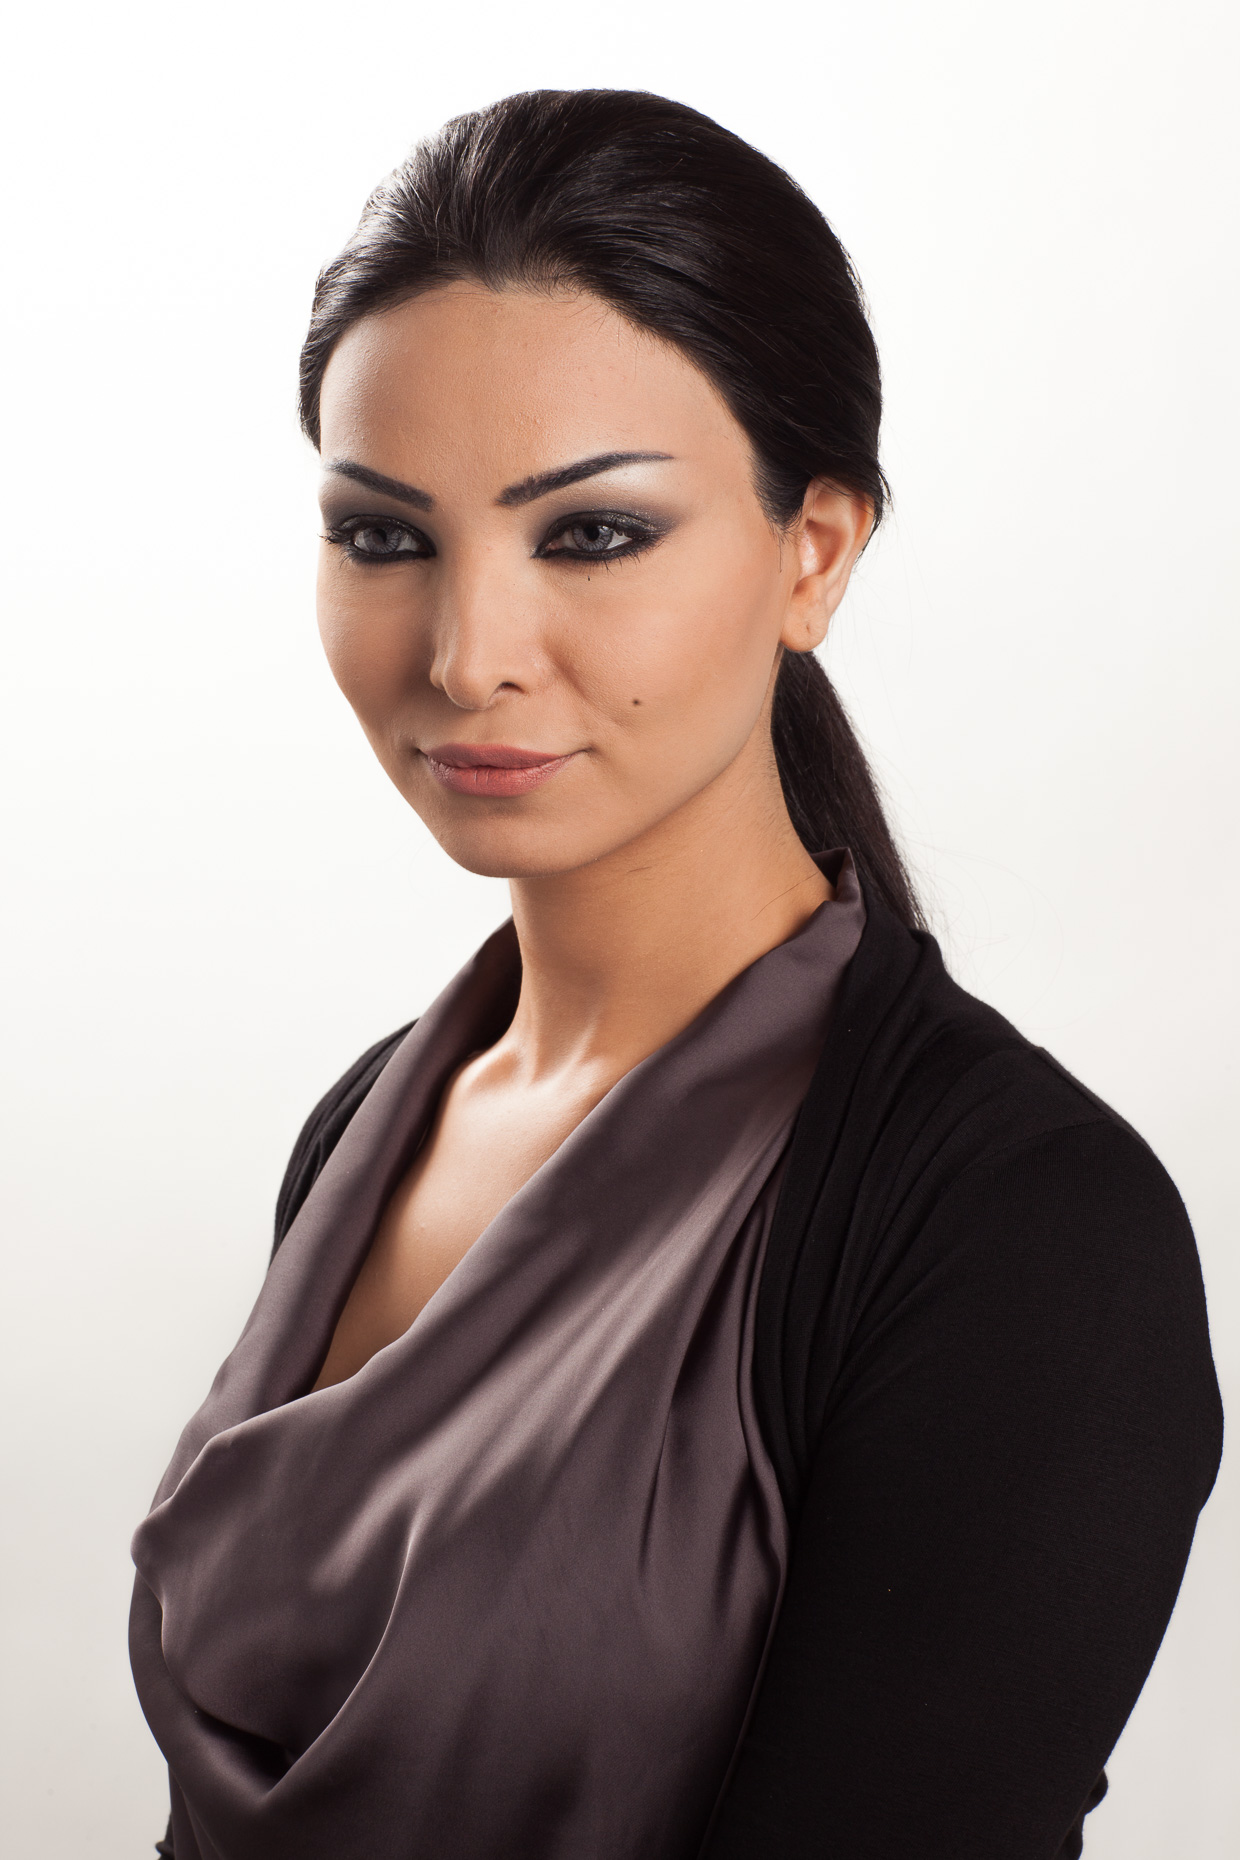 Hair Model | Portrait Photography in Abu Dhabi, UAE